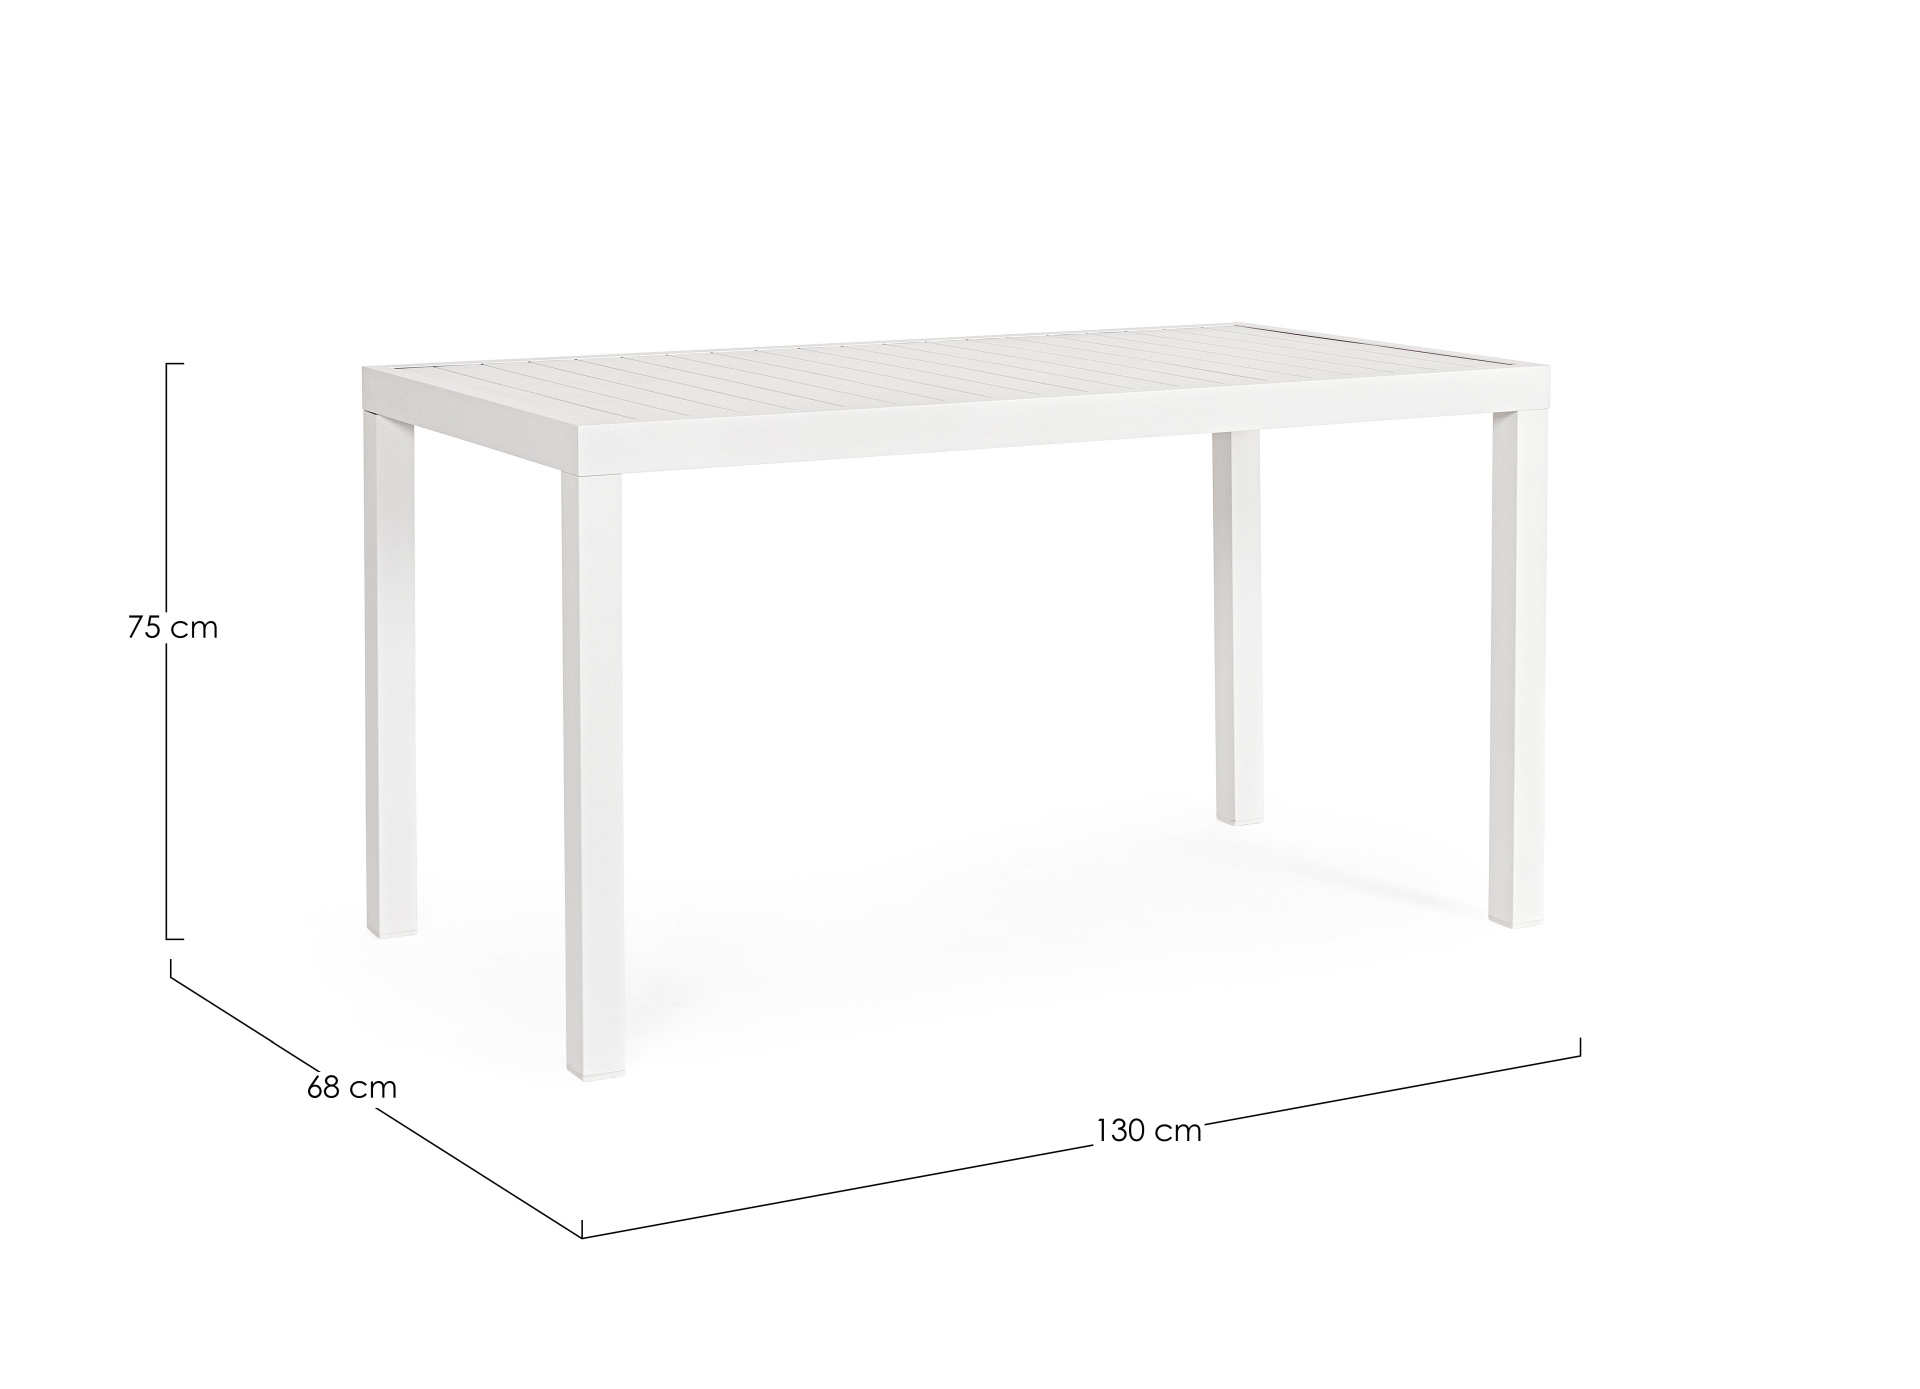 Der Gartentisch Hilde überzeugt mit seinem modernen Design. Gefertigt wurde er aus Aluminium, welches einen weißen Farbton besitzt. Das Gestell ist aus auch Aluminium und hat eine weiße Farbe. Der Tisch verfügt über eine Länge von 130 cm und ist für den O